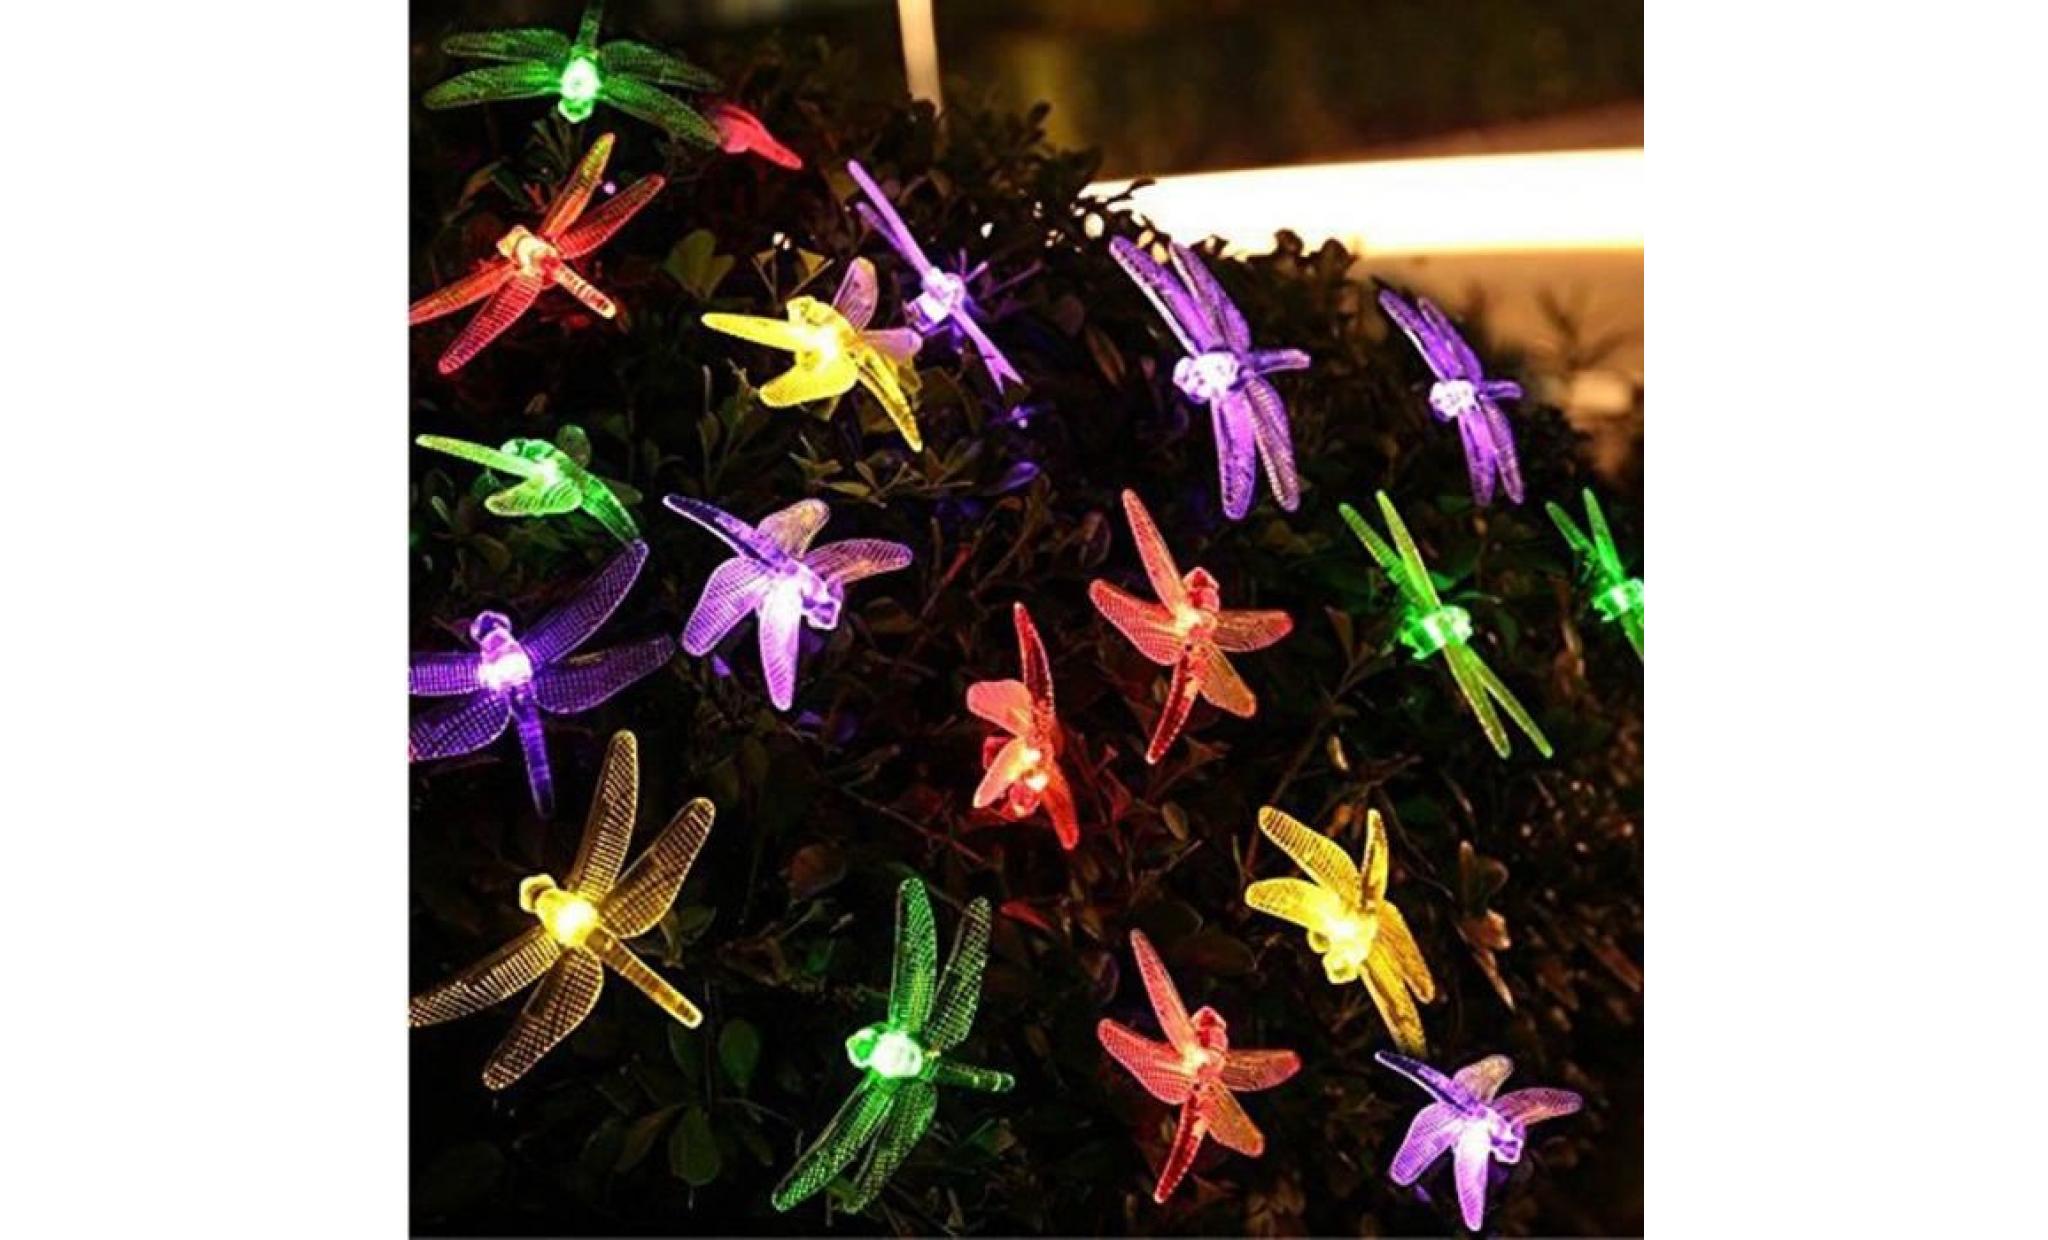 dragonfly Énergie solaire éclairage lampes solaires de lumières couleurs li789@